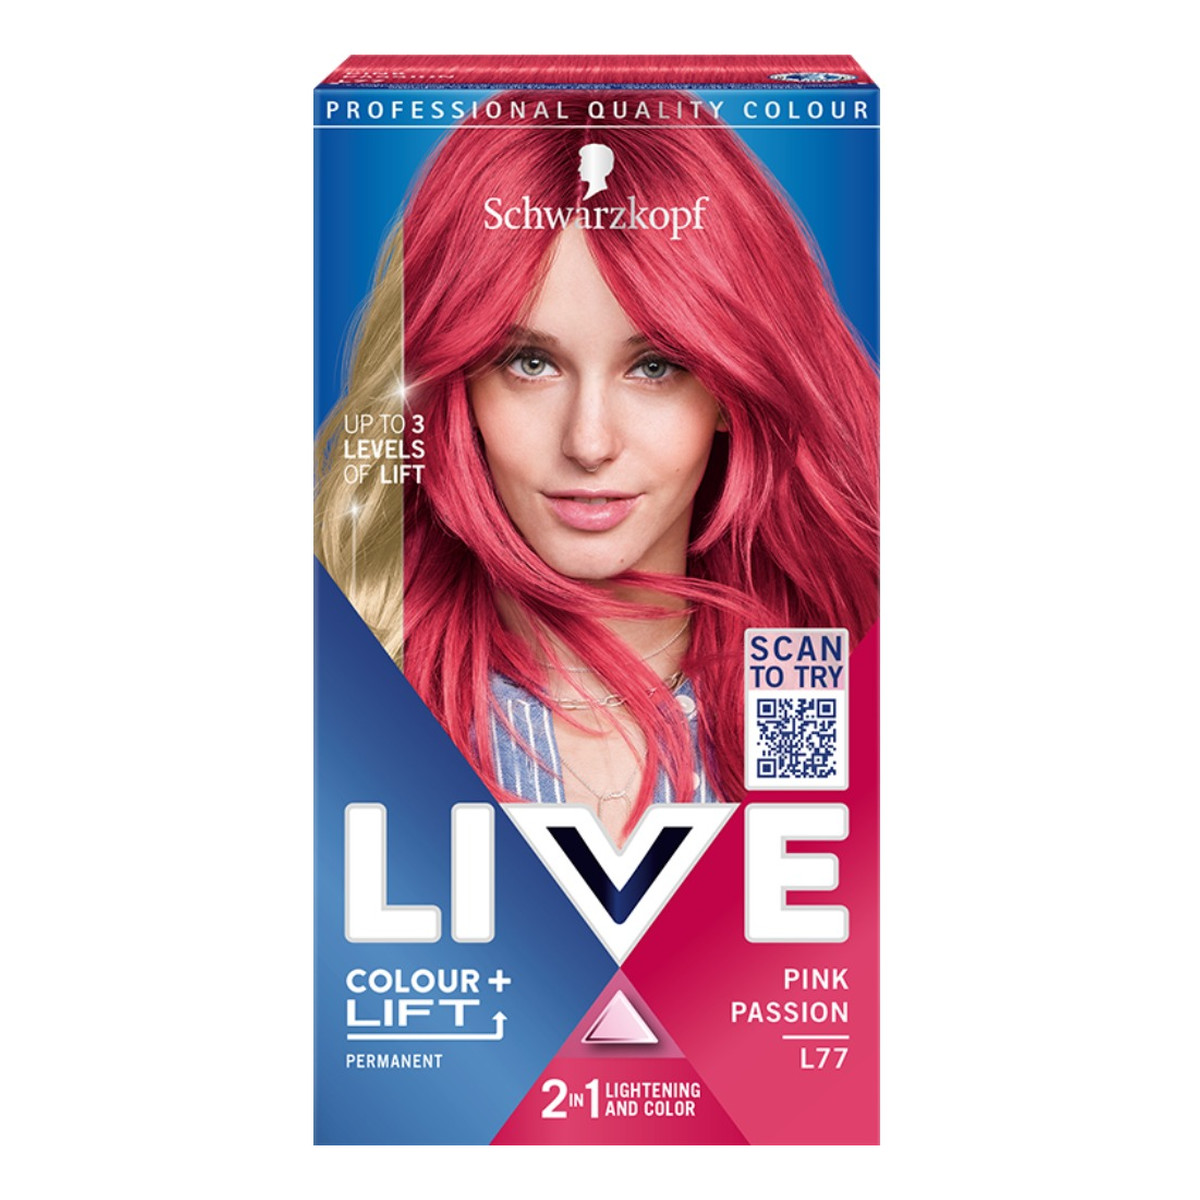 Schwarzkopf Live colour + lift rozjaśniająca i koloryzująca farba do włosów l77 pink passion